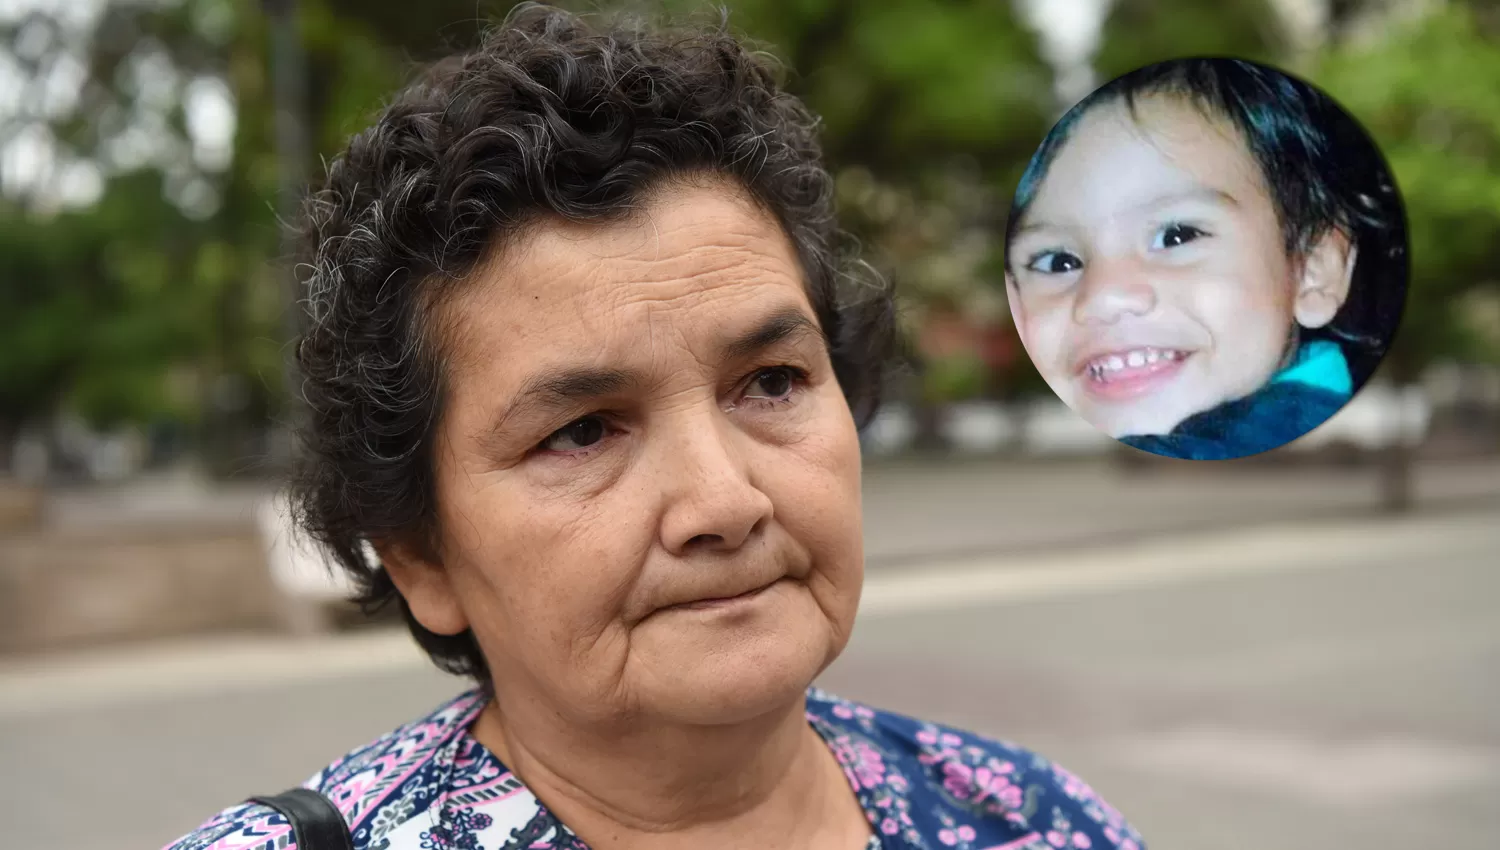 ESPERANZADA. Amalia Ojeda espera con ansiedad la confirmación o no de la identidad del pequeño encontrado en Buenos Aires. ARCHIVO LA GACETA / FOTO DE ANALÍA JARAMILLO